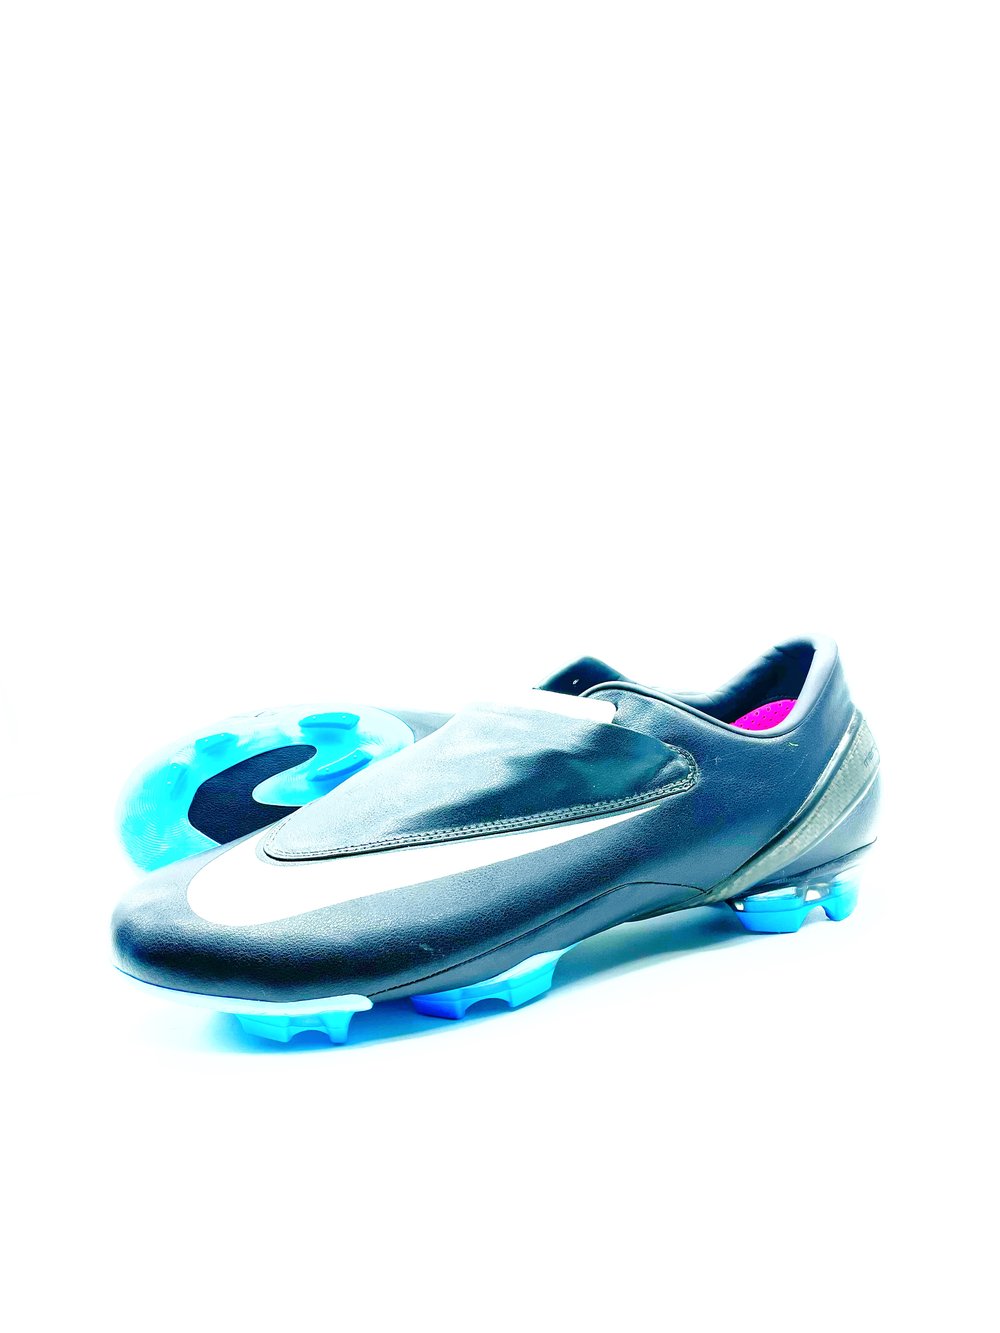 Image of Nike Vapor IV EURO08